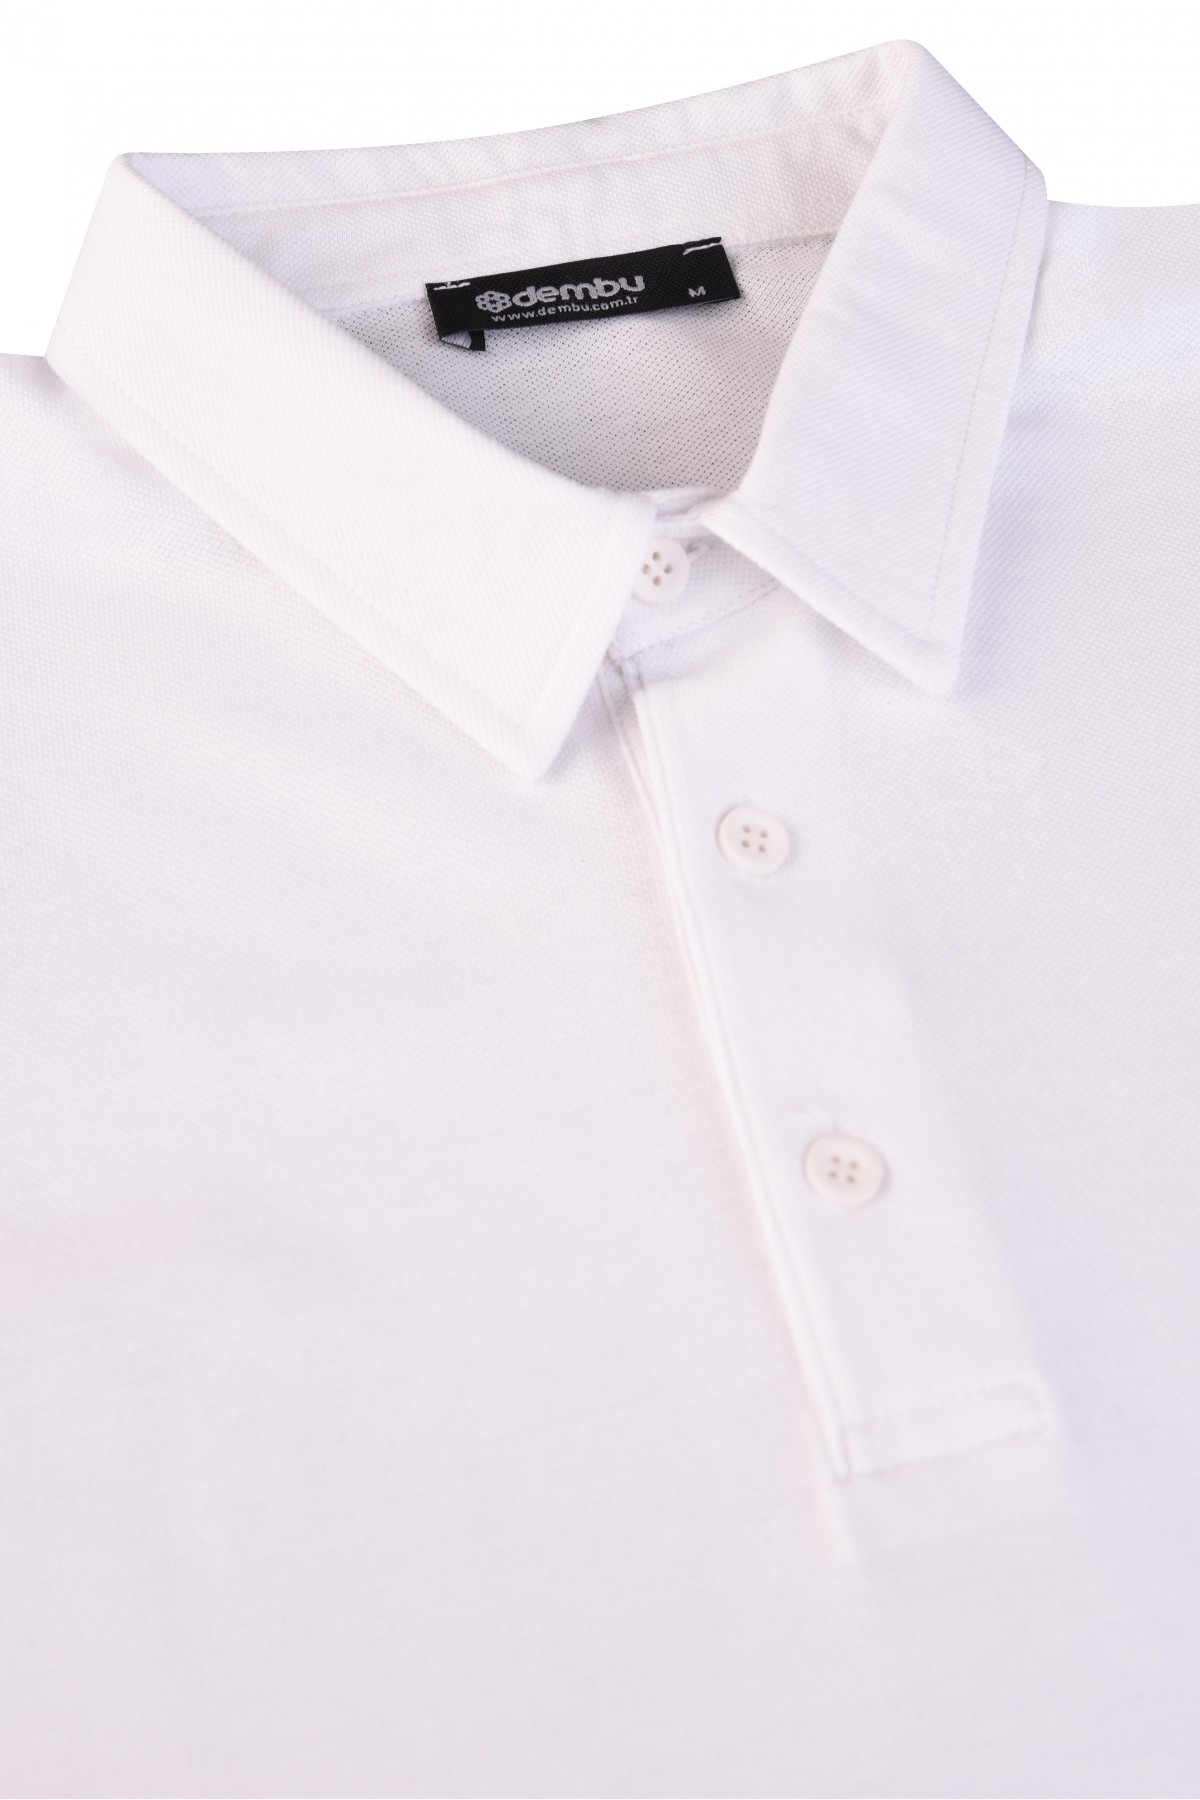 Vav Tasarım Punto Baskılı Pamuk Polo Yaka Beyaz T-shirt 23'